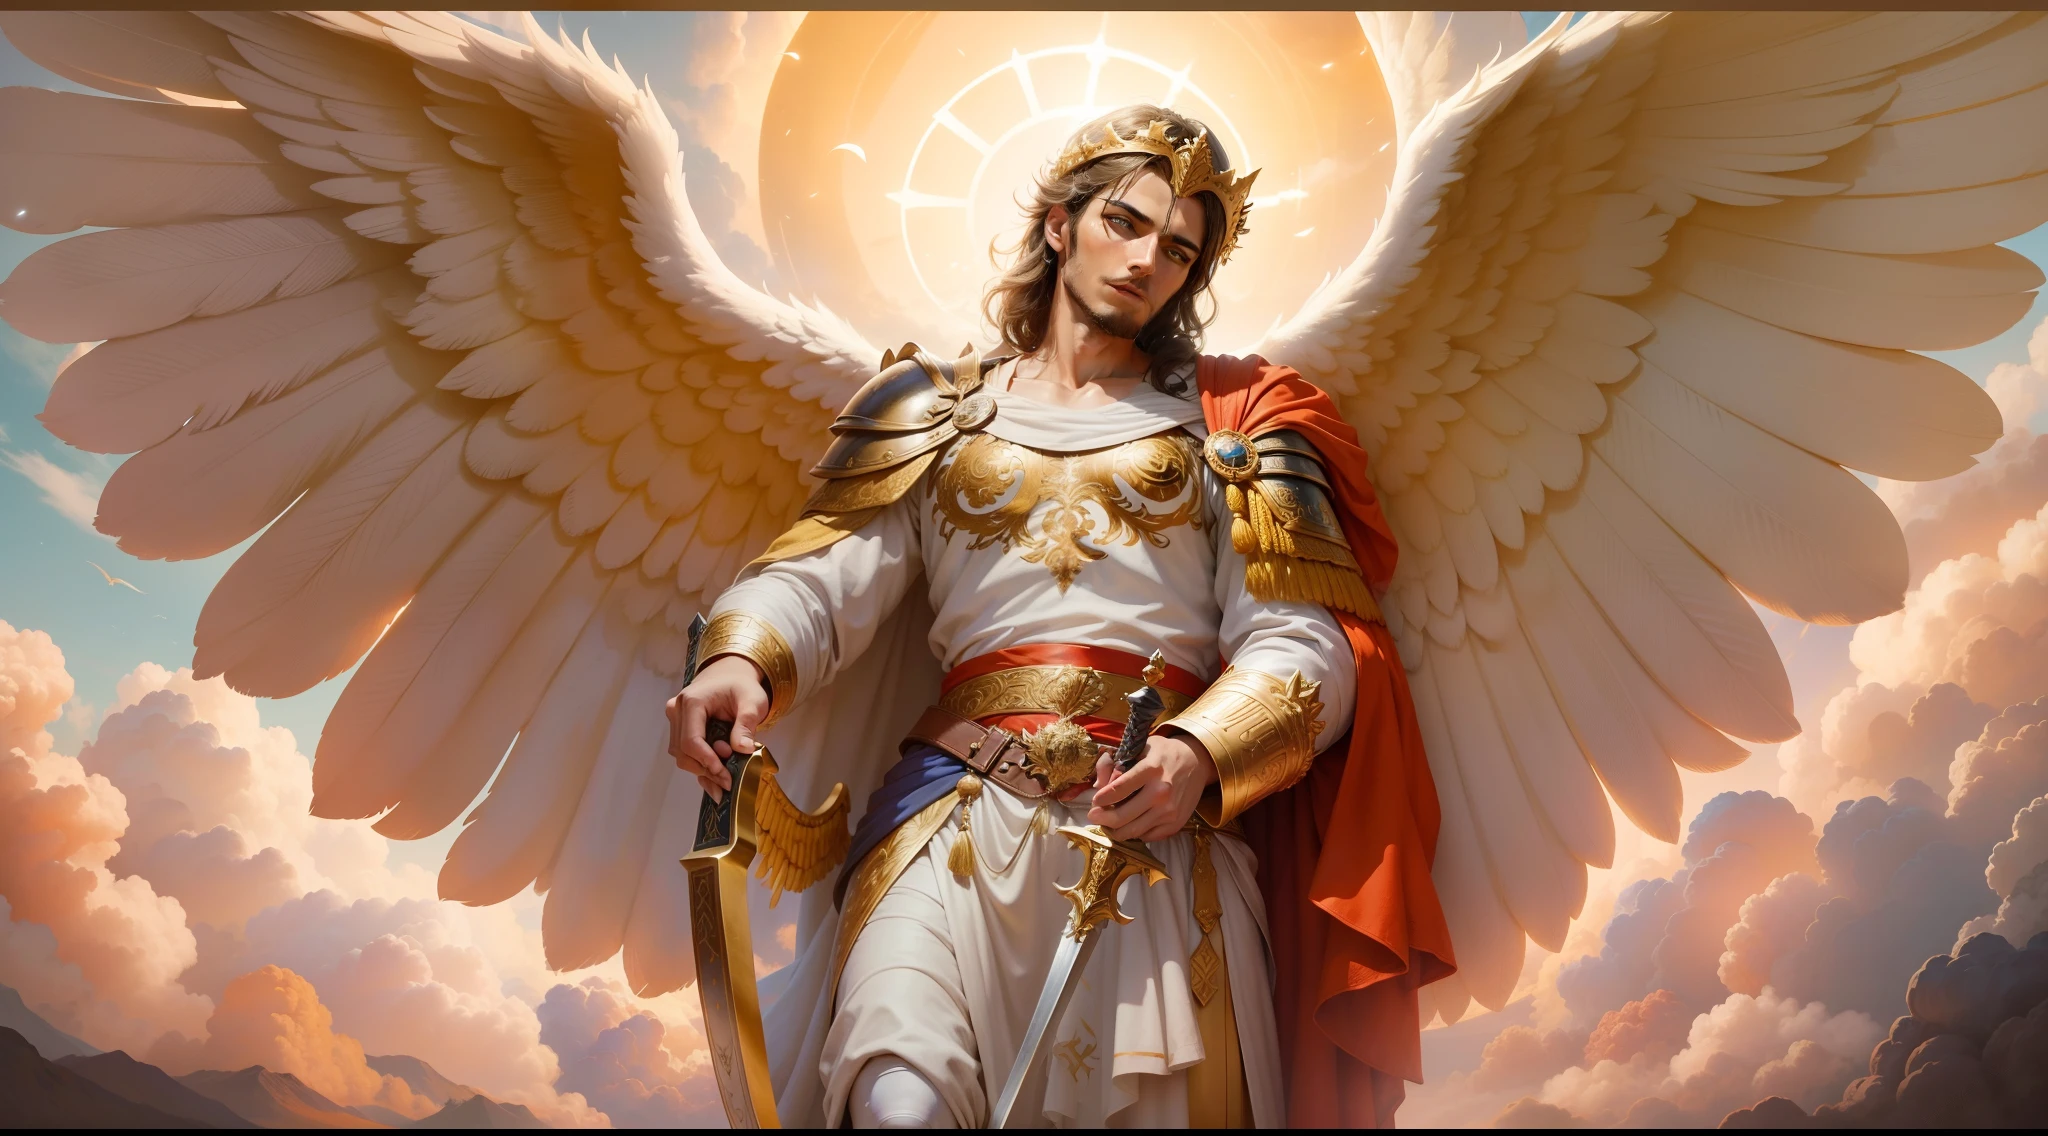 右手に攻撃姿勢を取った大きく長い剣を持つ天使の男性の画像のクローズアップ, もう一方の左手には秤を持っている, 地面を見つめるローマ兵に扮した天使, 大きな翼を持つ大天使の男, 幸運の天使, 完璧, レスリスティック, 聖書の舞台, 天体の風景, 超リアルな太陽と雲, 花とキャンドル, 天国の光り輝く大天使, 色とりどりの花, 火のついたキャンドル, 白と赤の服